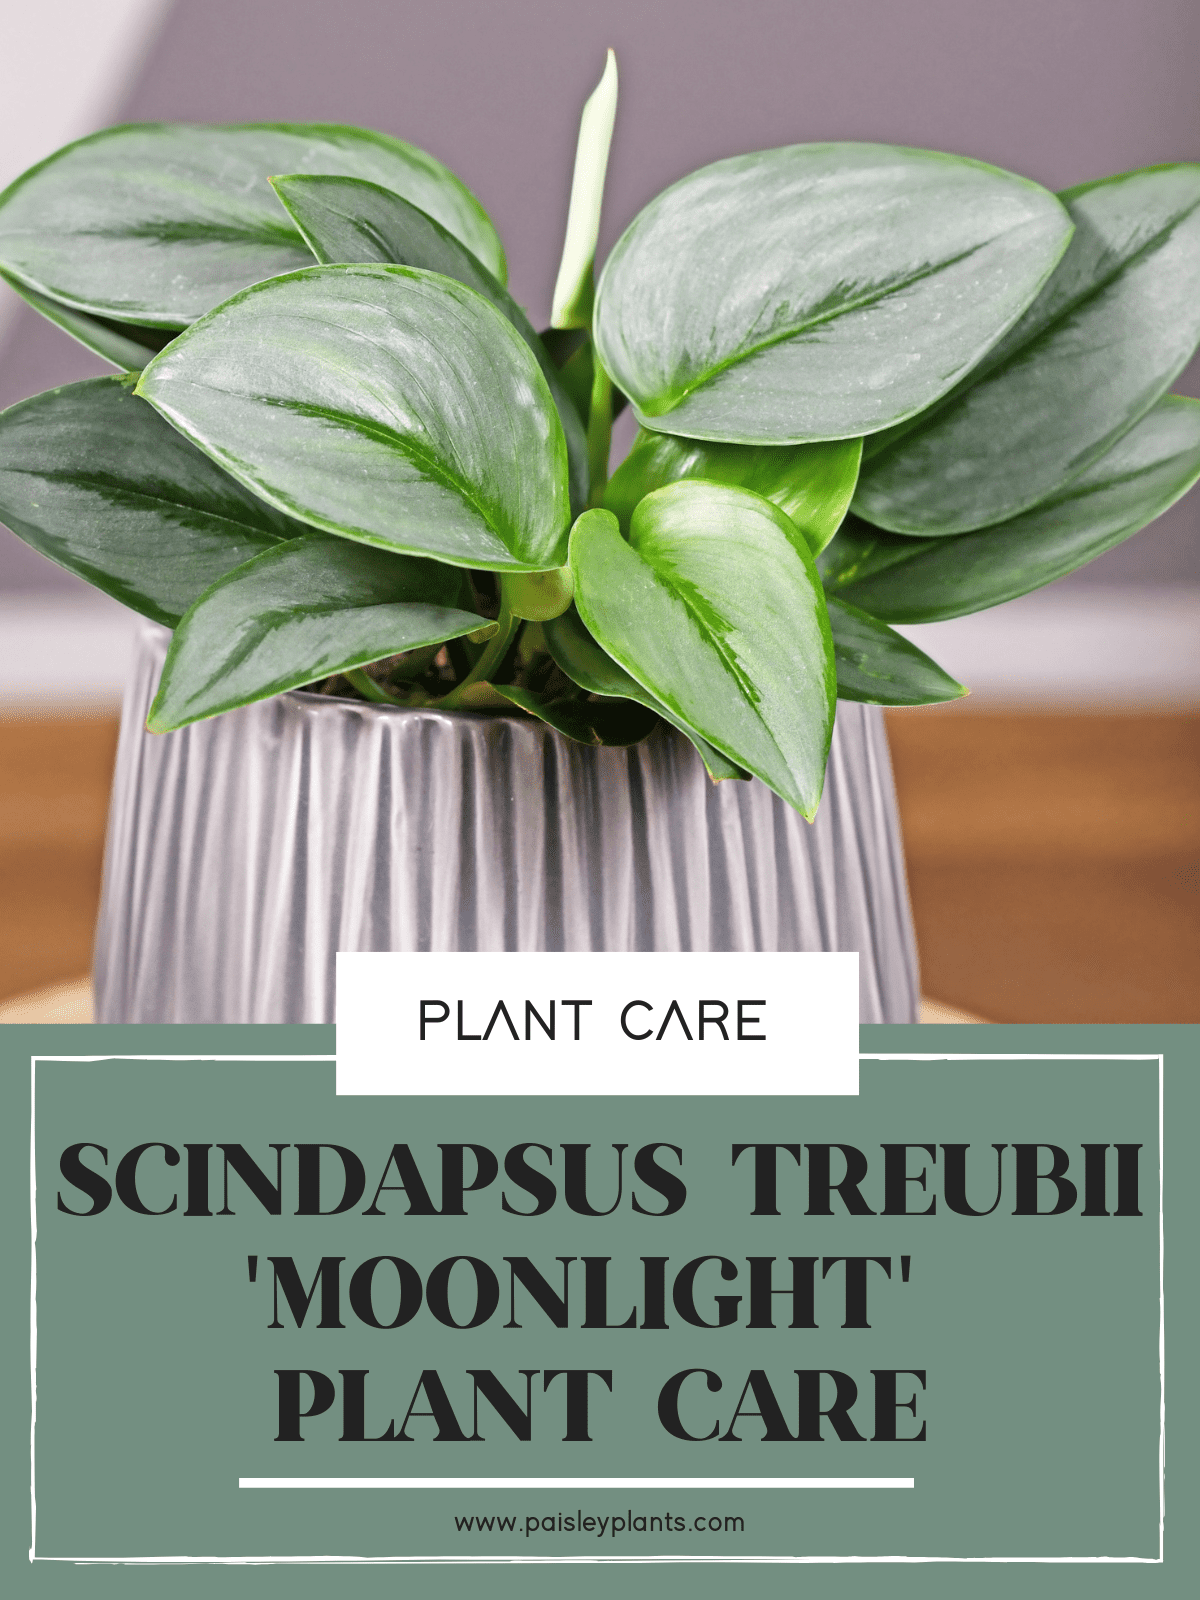 Scindapsus treubii 'Moonlight'